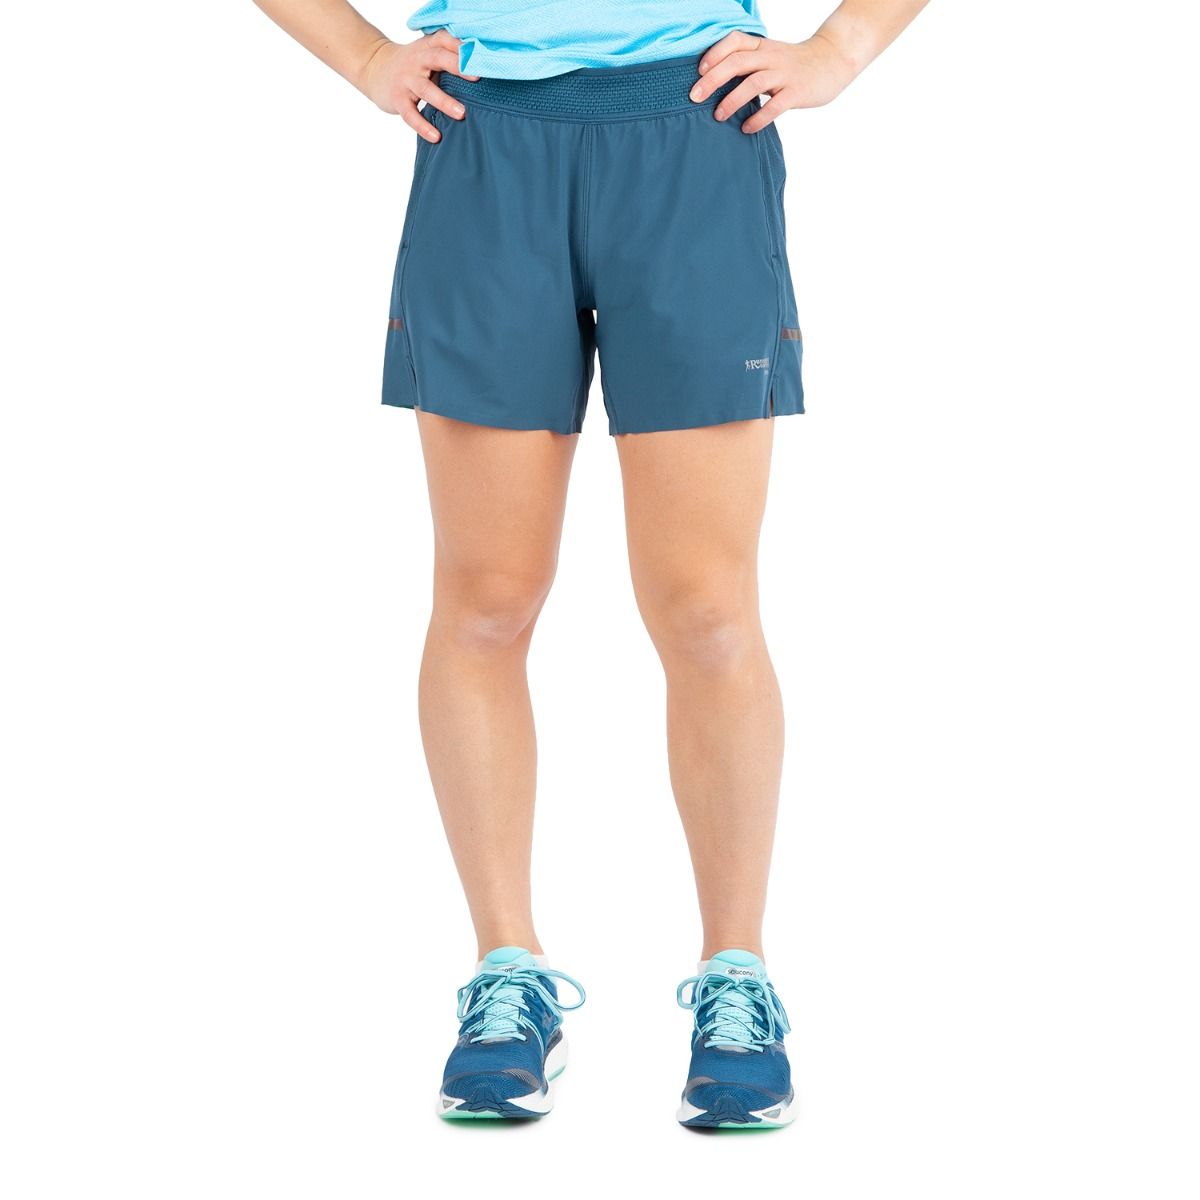 Attifall Women's High Waisted Running Shorts,2.5'' / 4'' - Quick